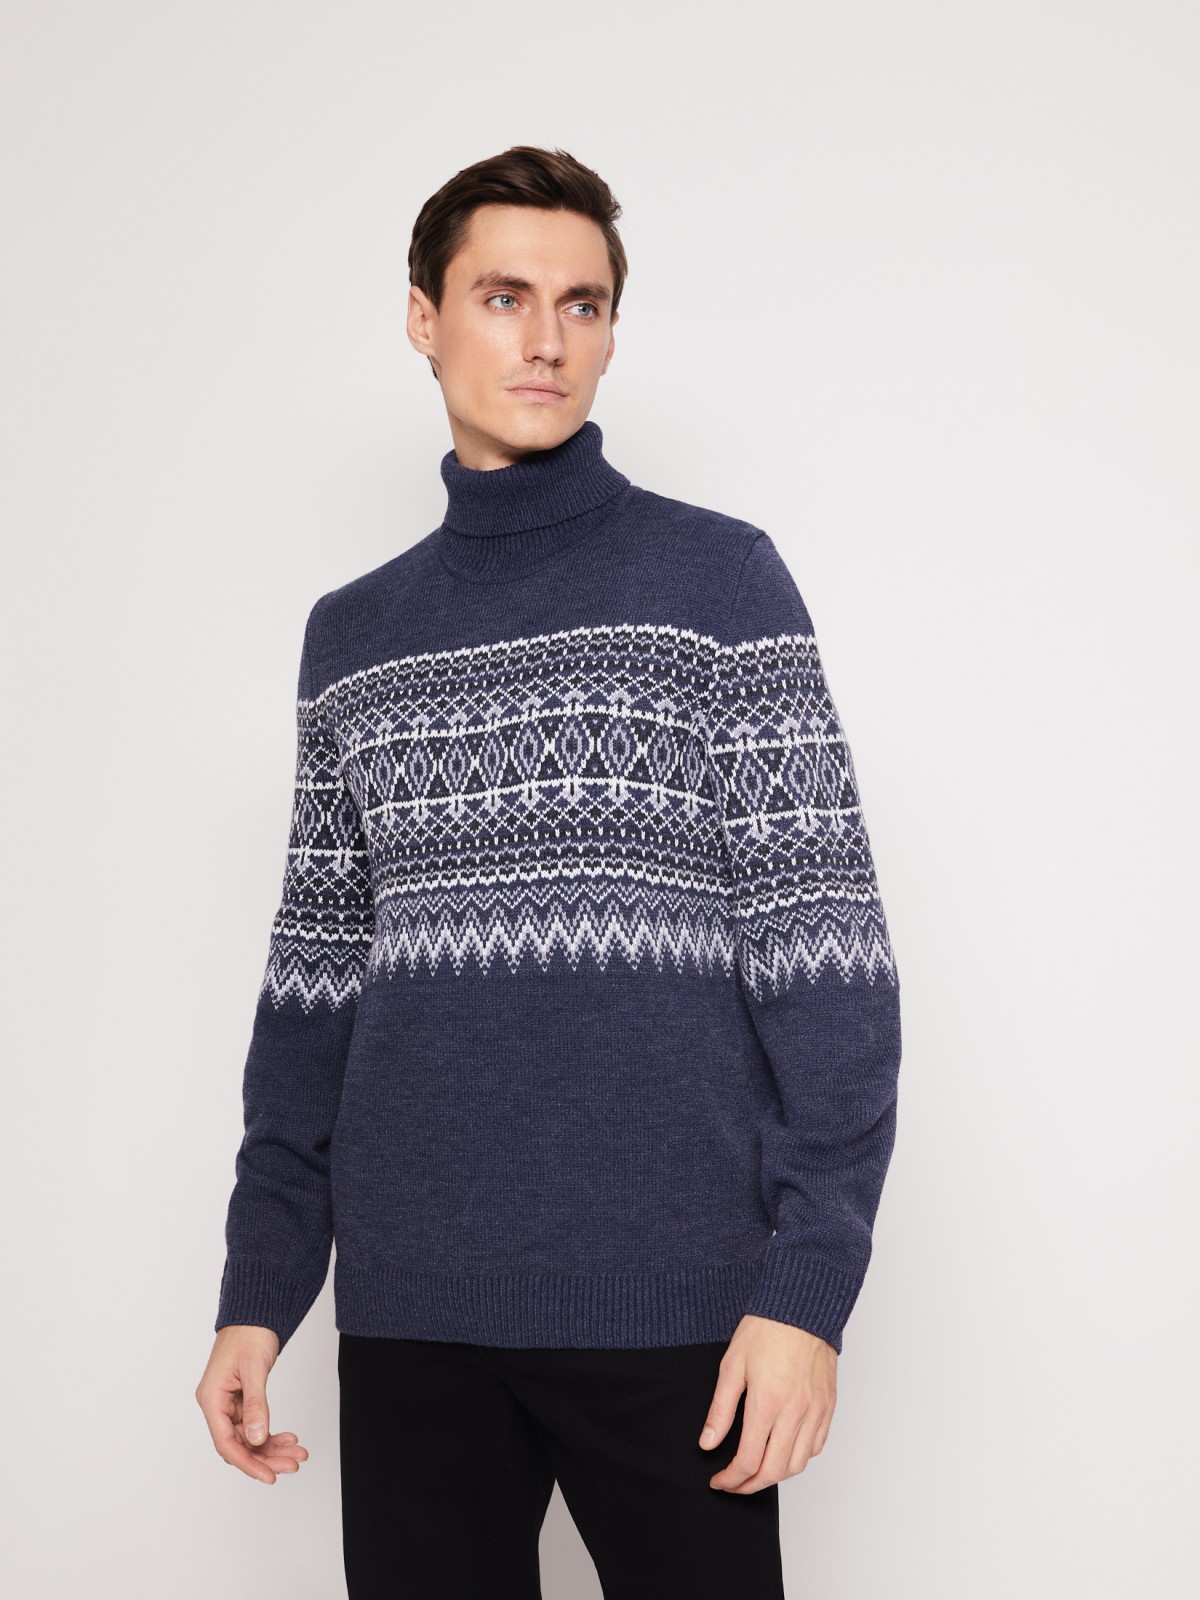 Вязаный свитер с узором zolla 011436143503, цвет голубой, размер S - фото 4